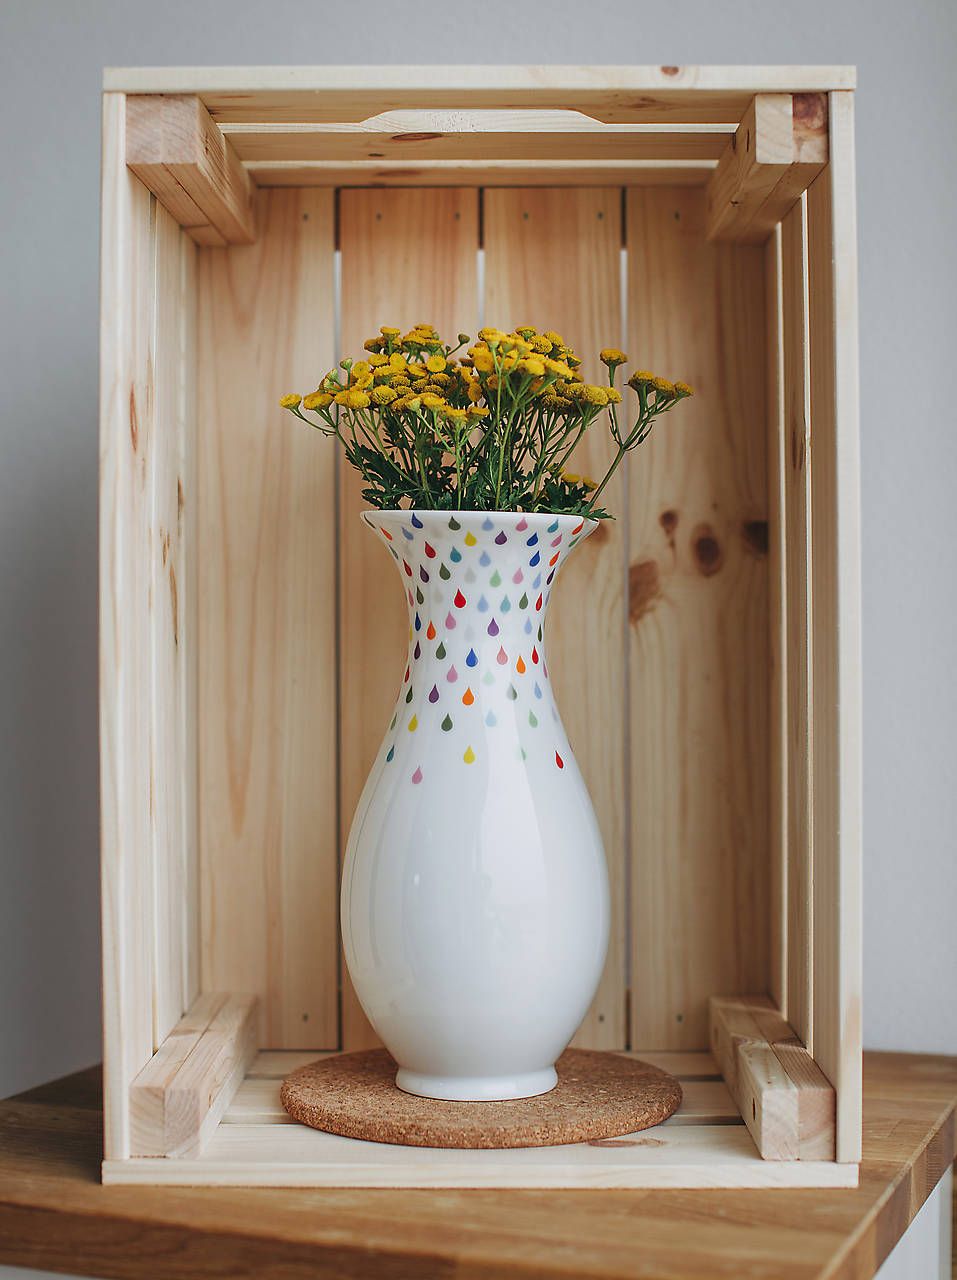 Barvy deště - porcelánová váza 20 cm